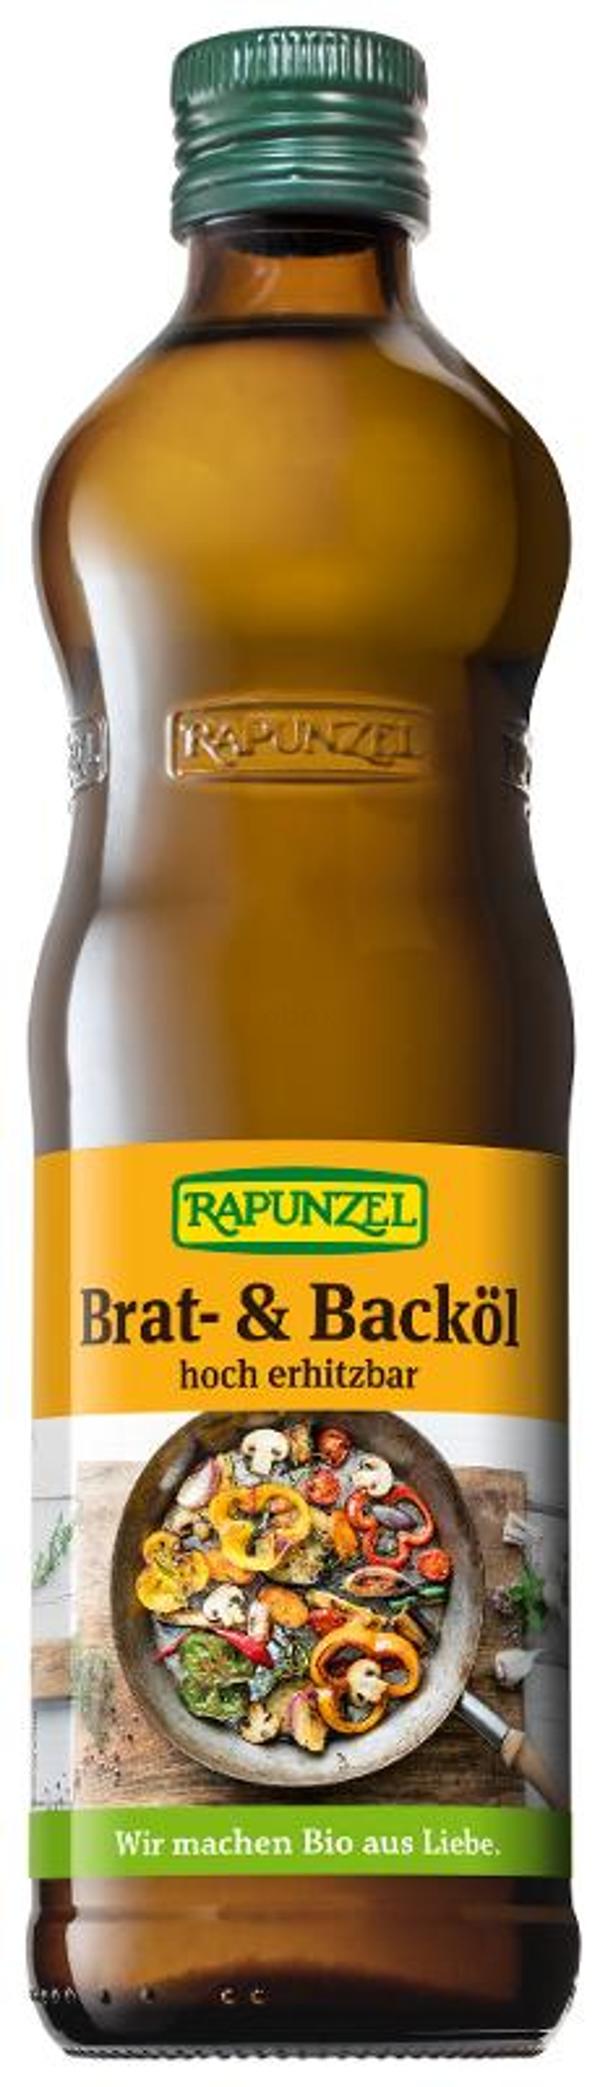 Produktfoto zu Rapunzel Brat- und Backöl - 0,5l